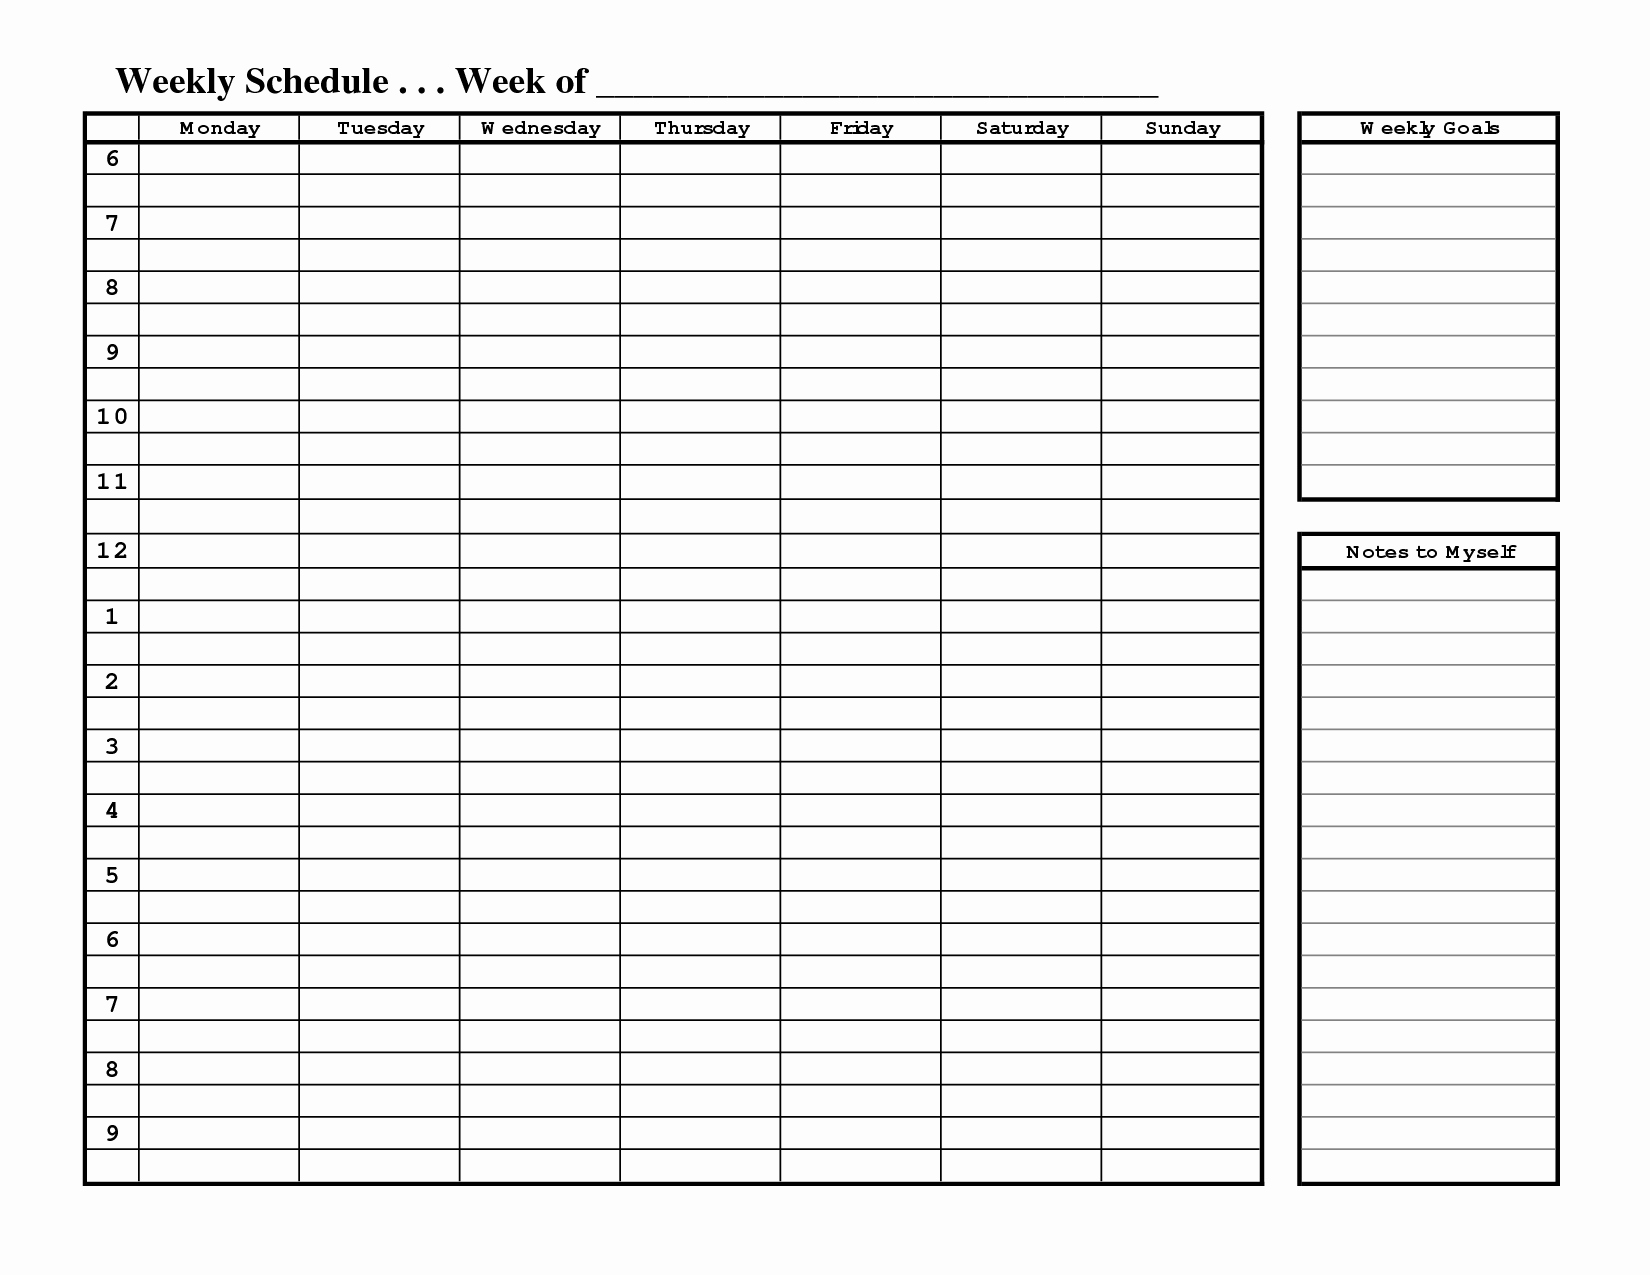 Free Printable Employee Schedule Beautiful Free Printable Weekly Schedule Template